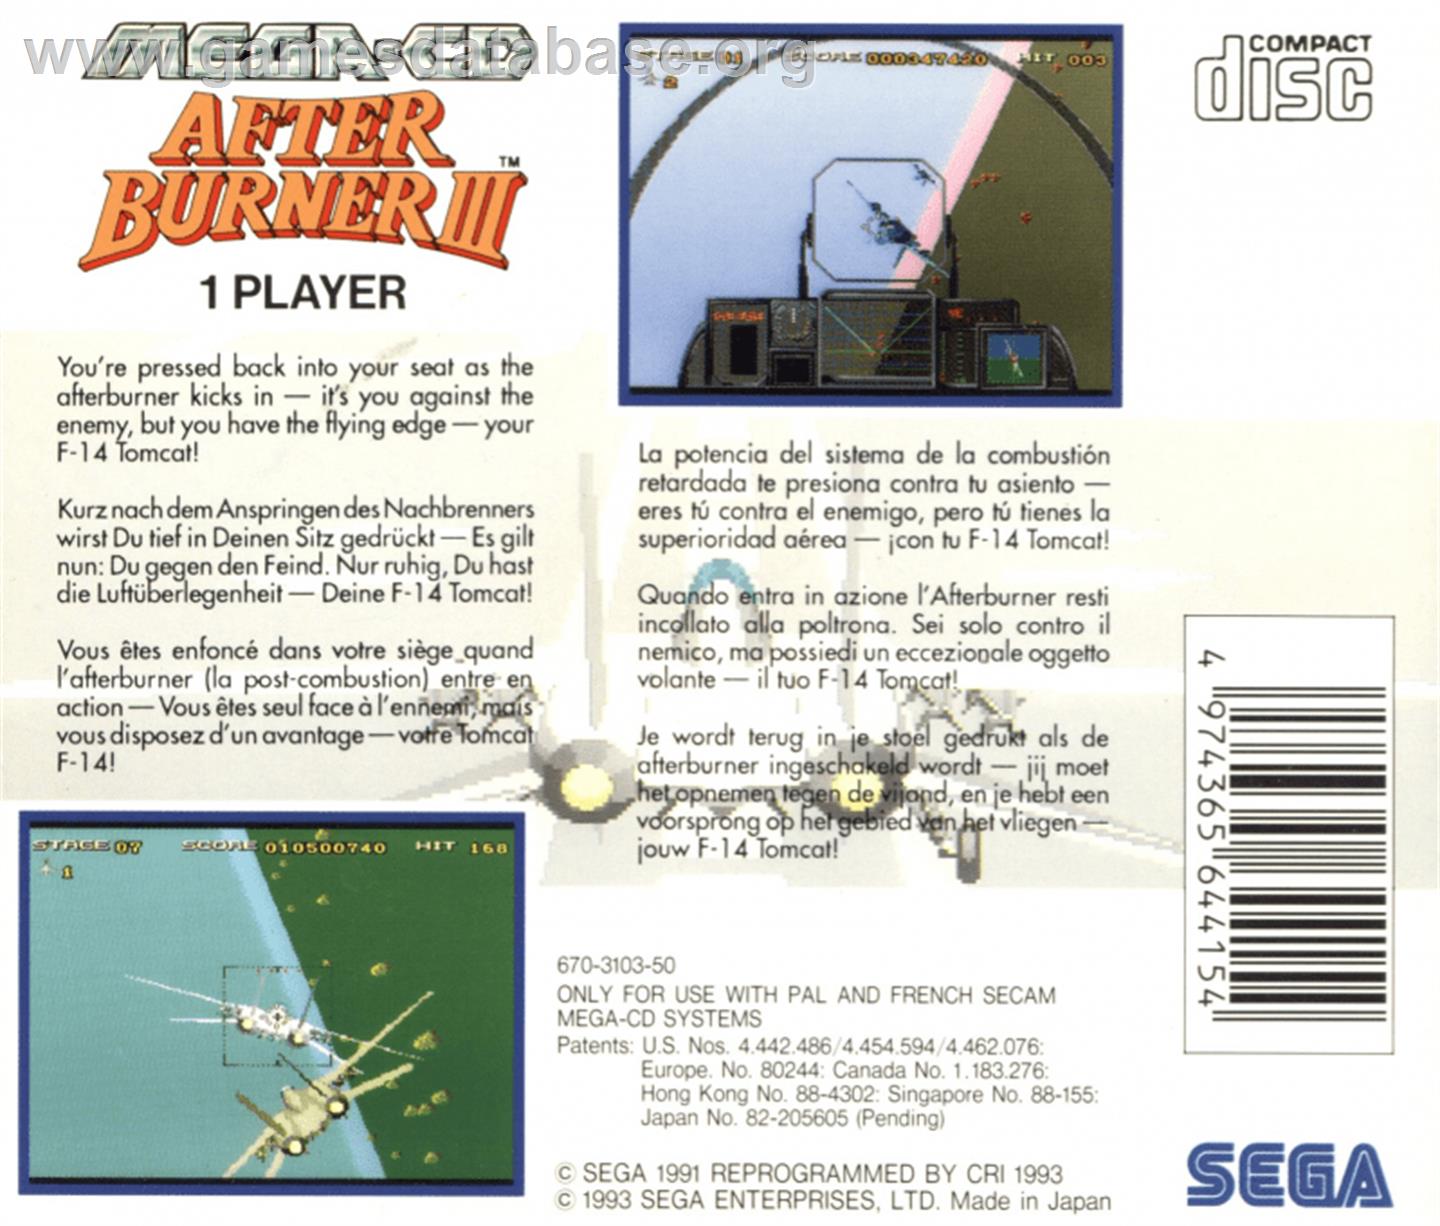 After Burner III - Sega CD - Artwork - Box Back